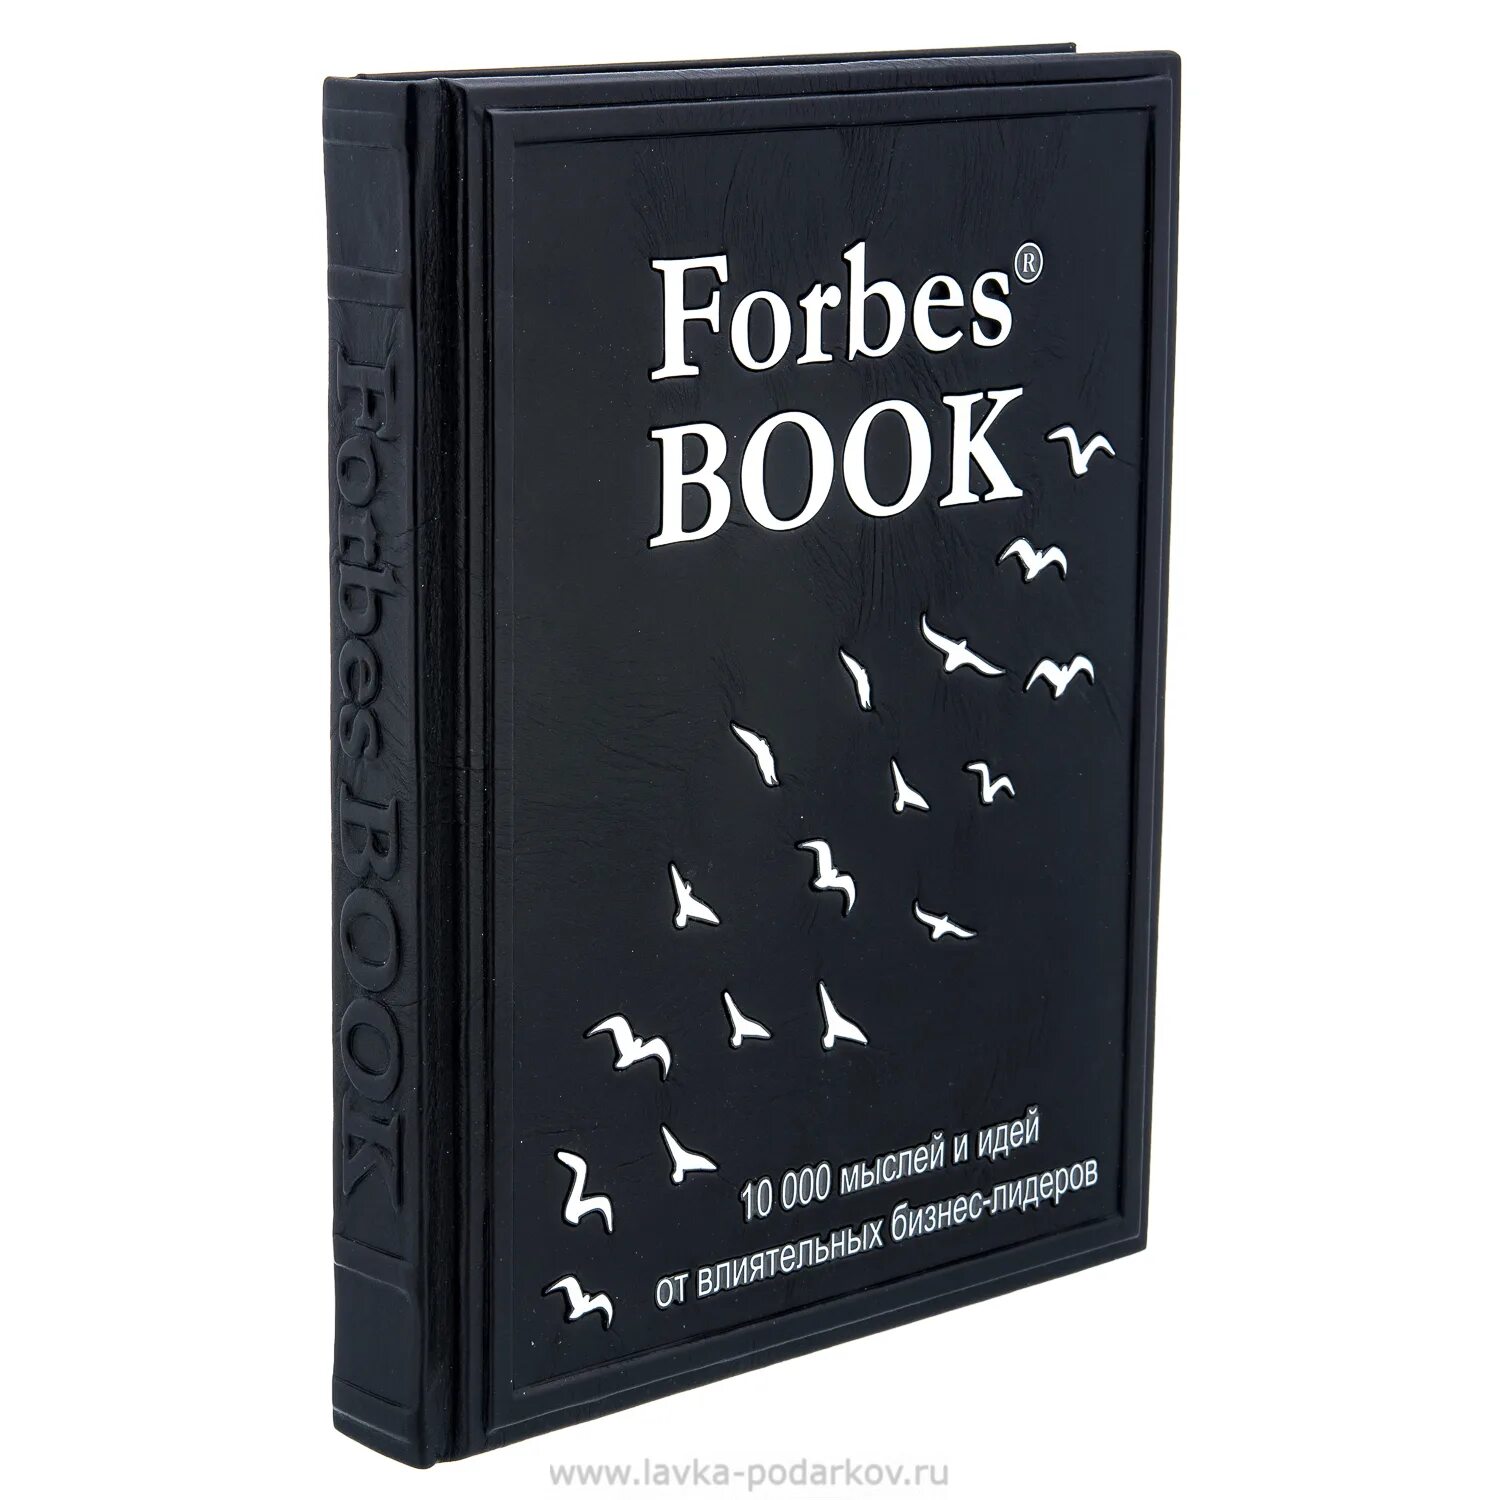 10000 книга 11. Forbes book 10000 мыслей. Книга Forbes book. Forbes book белая. Forbes 10000 мыслей (черная обложка).